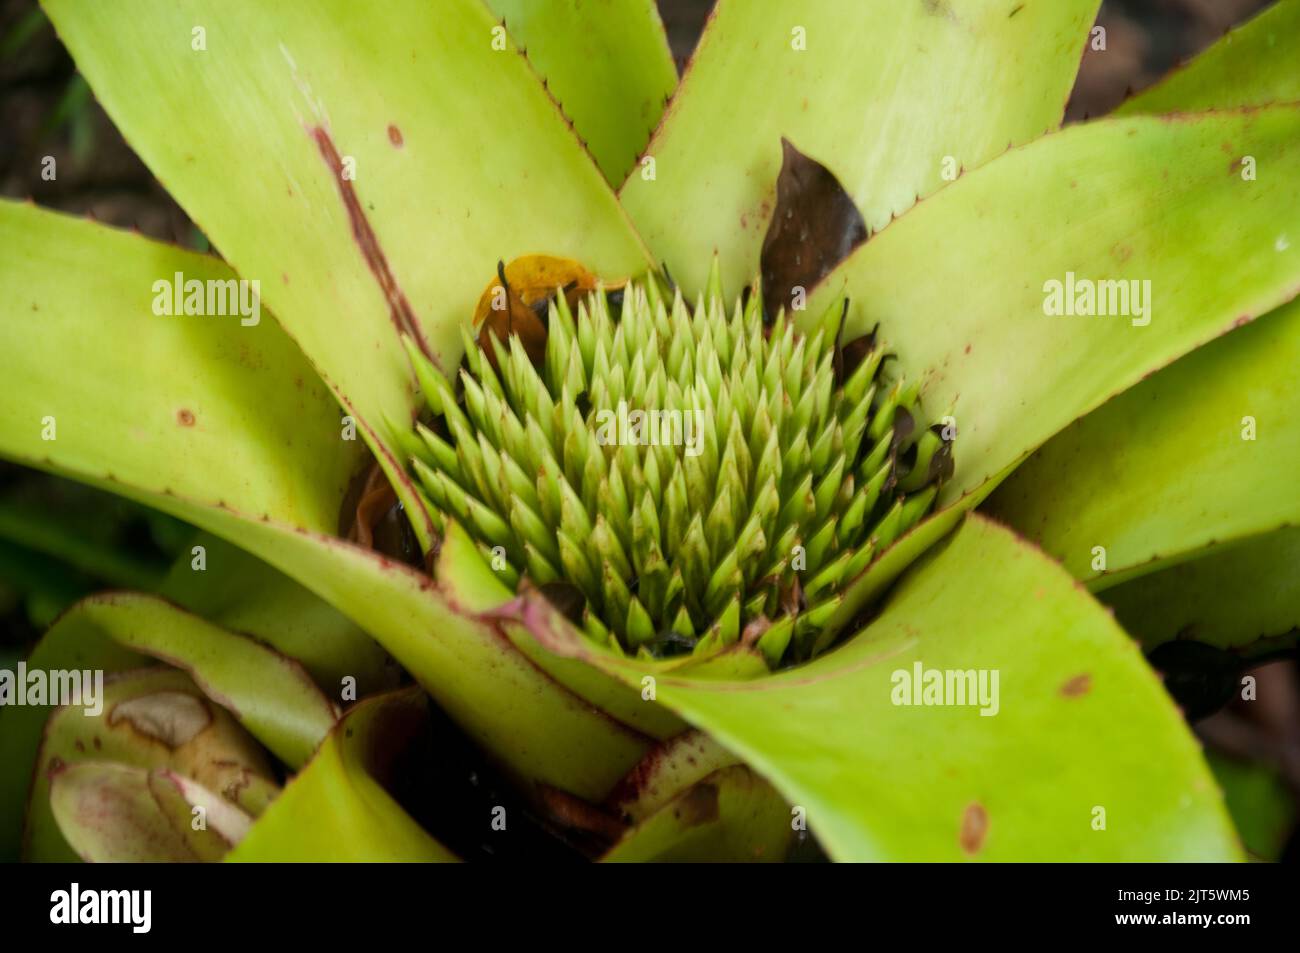 Bromeliad, Tropical Spice Garden, Penang, Malaysia, Asien. Penangs Potenzial als Gewürzinsel wurde sehr bald nach seiner Entdeckung durch die B erkannt Stockfoto